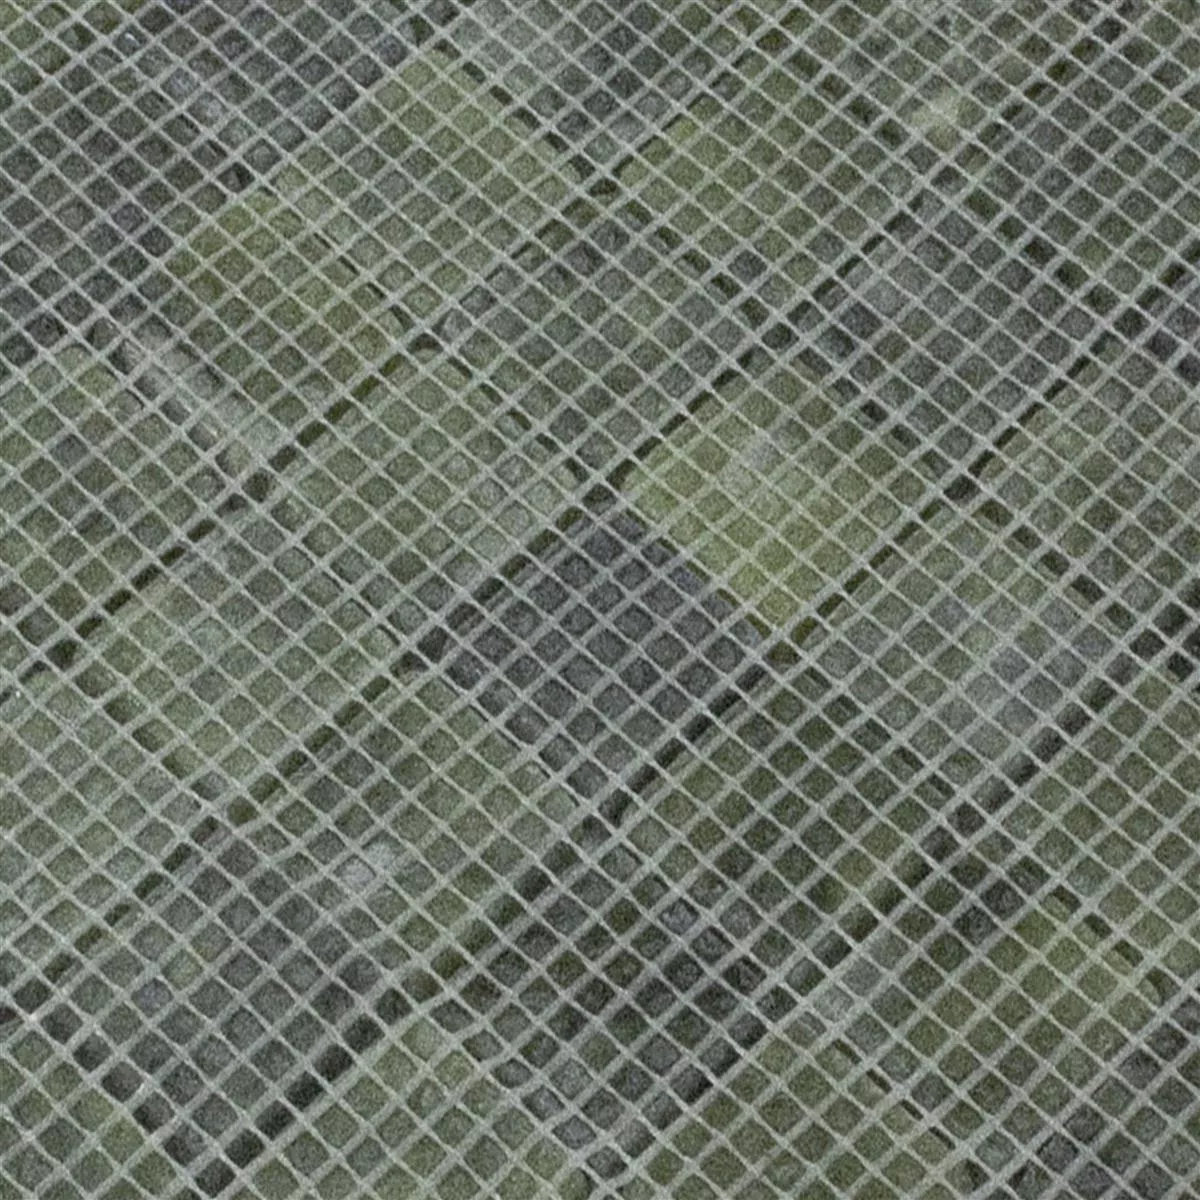 Marmor Naturstein Mosaik Fliesen Valendria Verde Grün